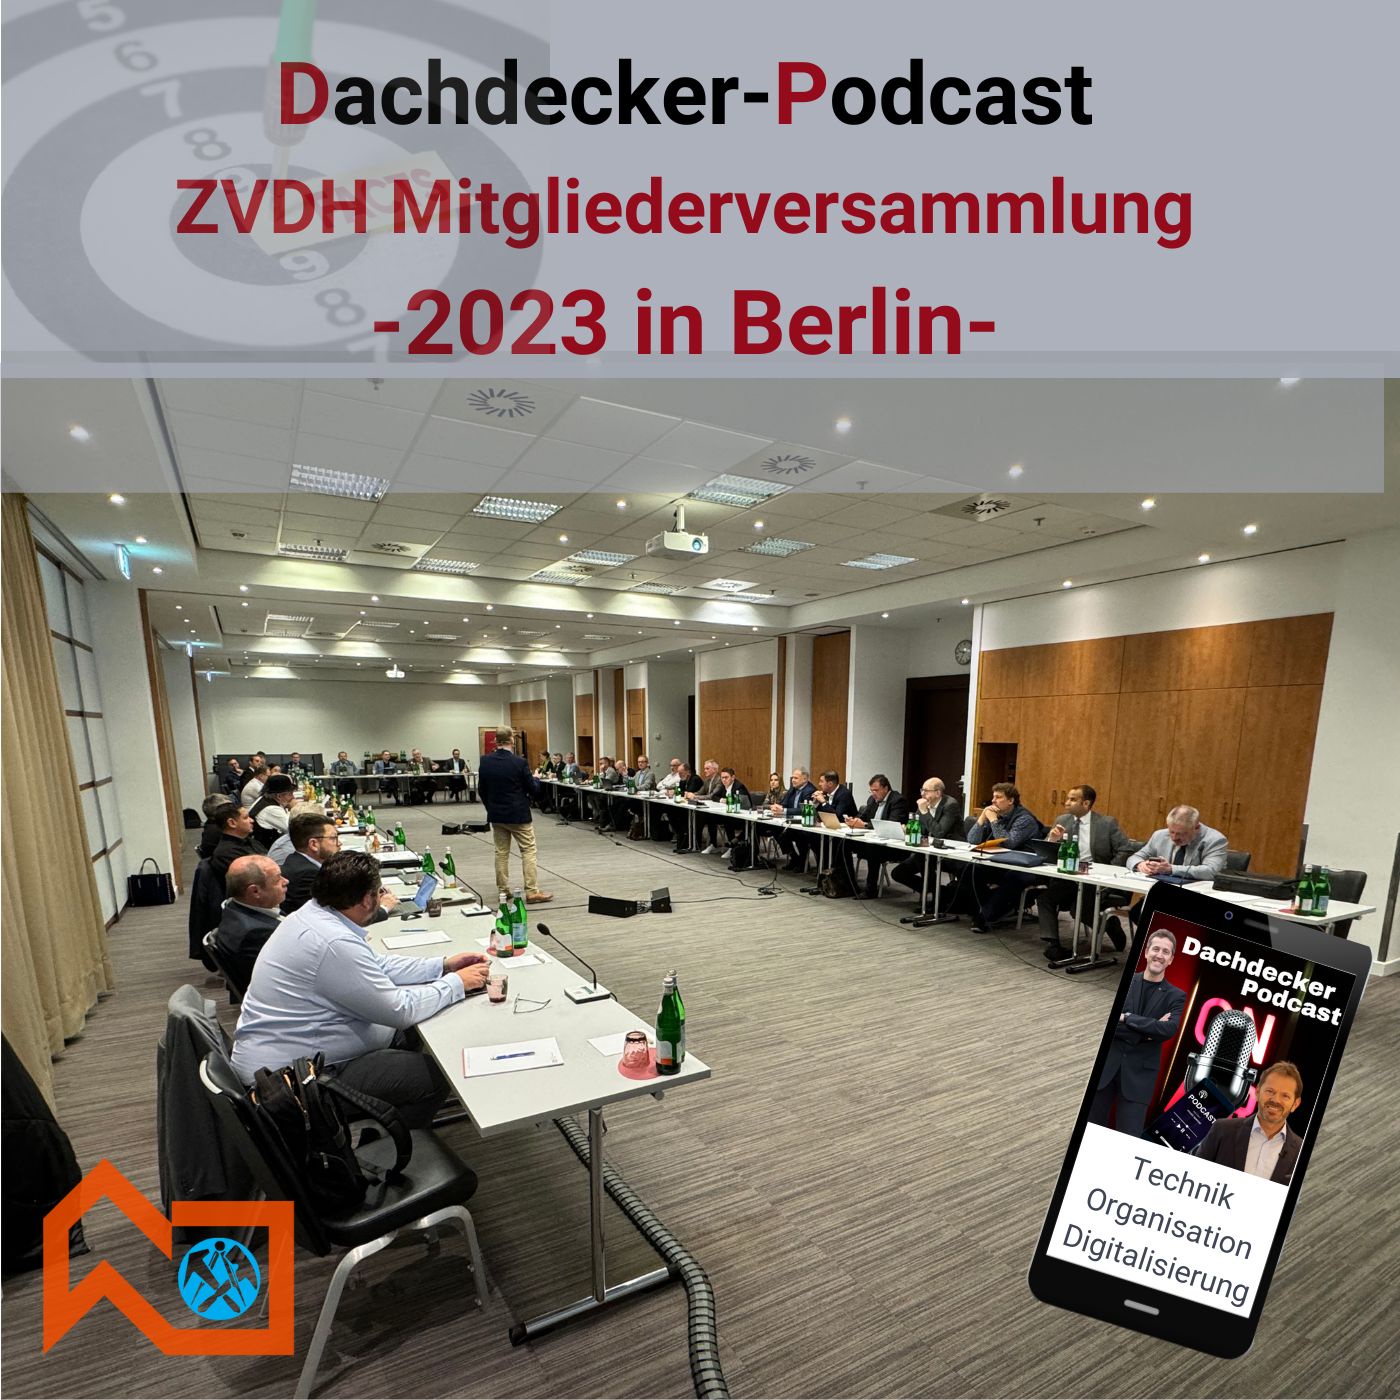 ZVDH Mitgliederversammlung November 2023 in Berlin